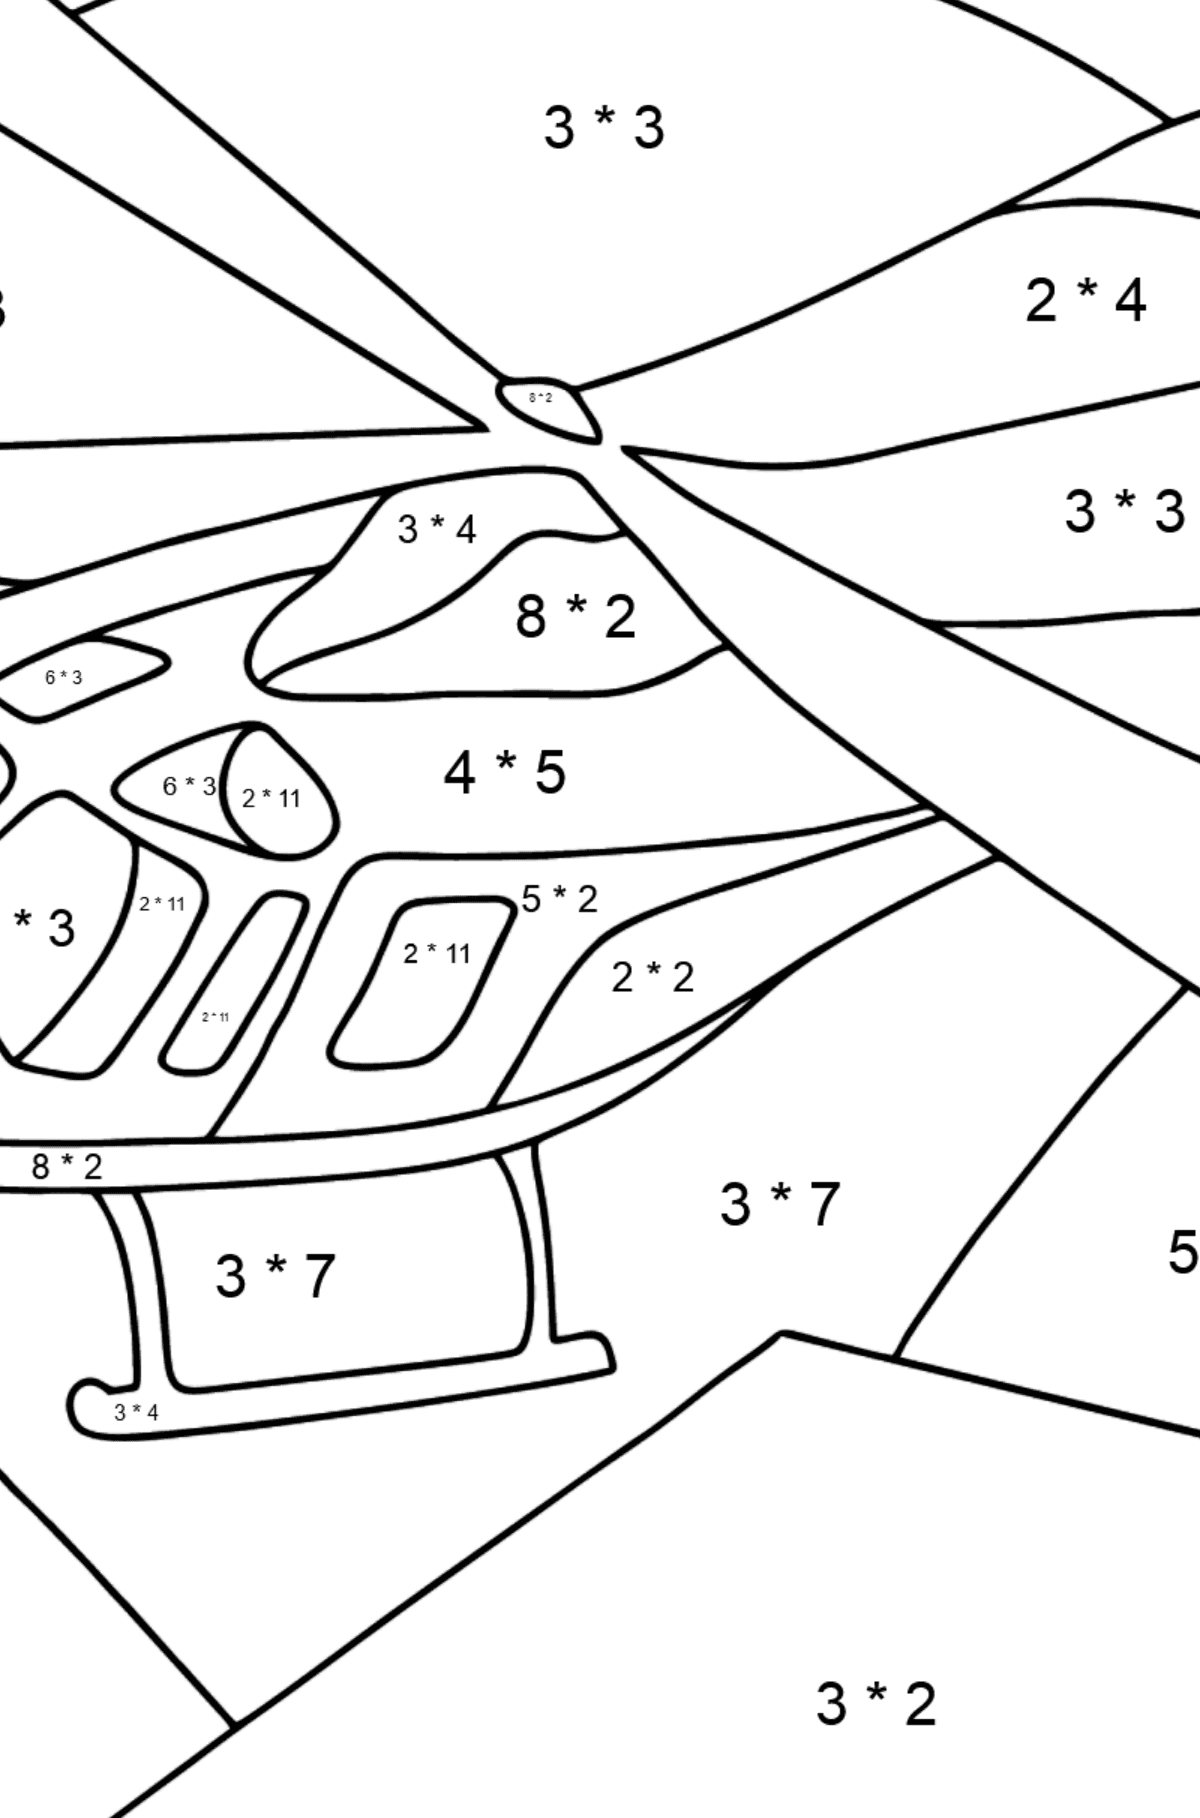 Dibujo para Colorear - Un Helicóptero Deportivo - Colorear con Matemáticas - Multiplicaciones para Niños